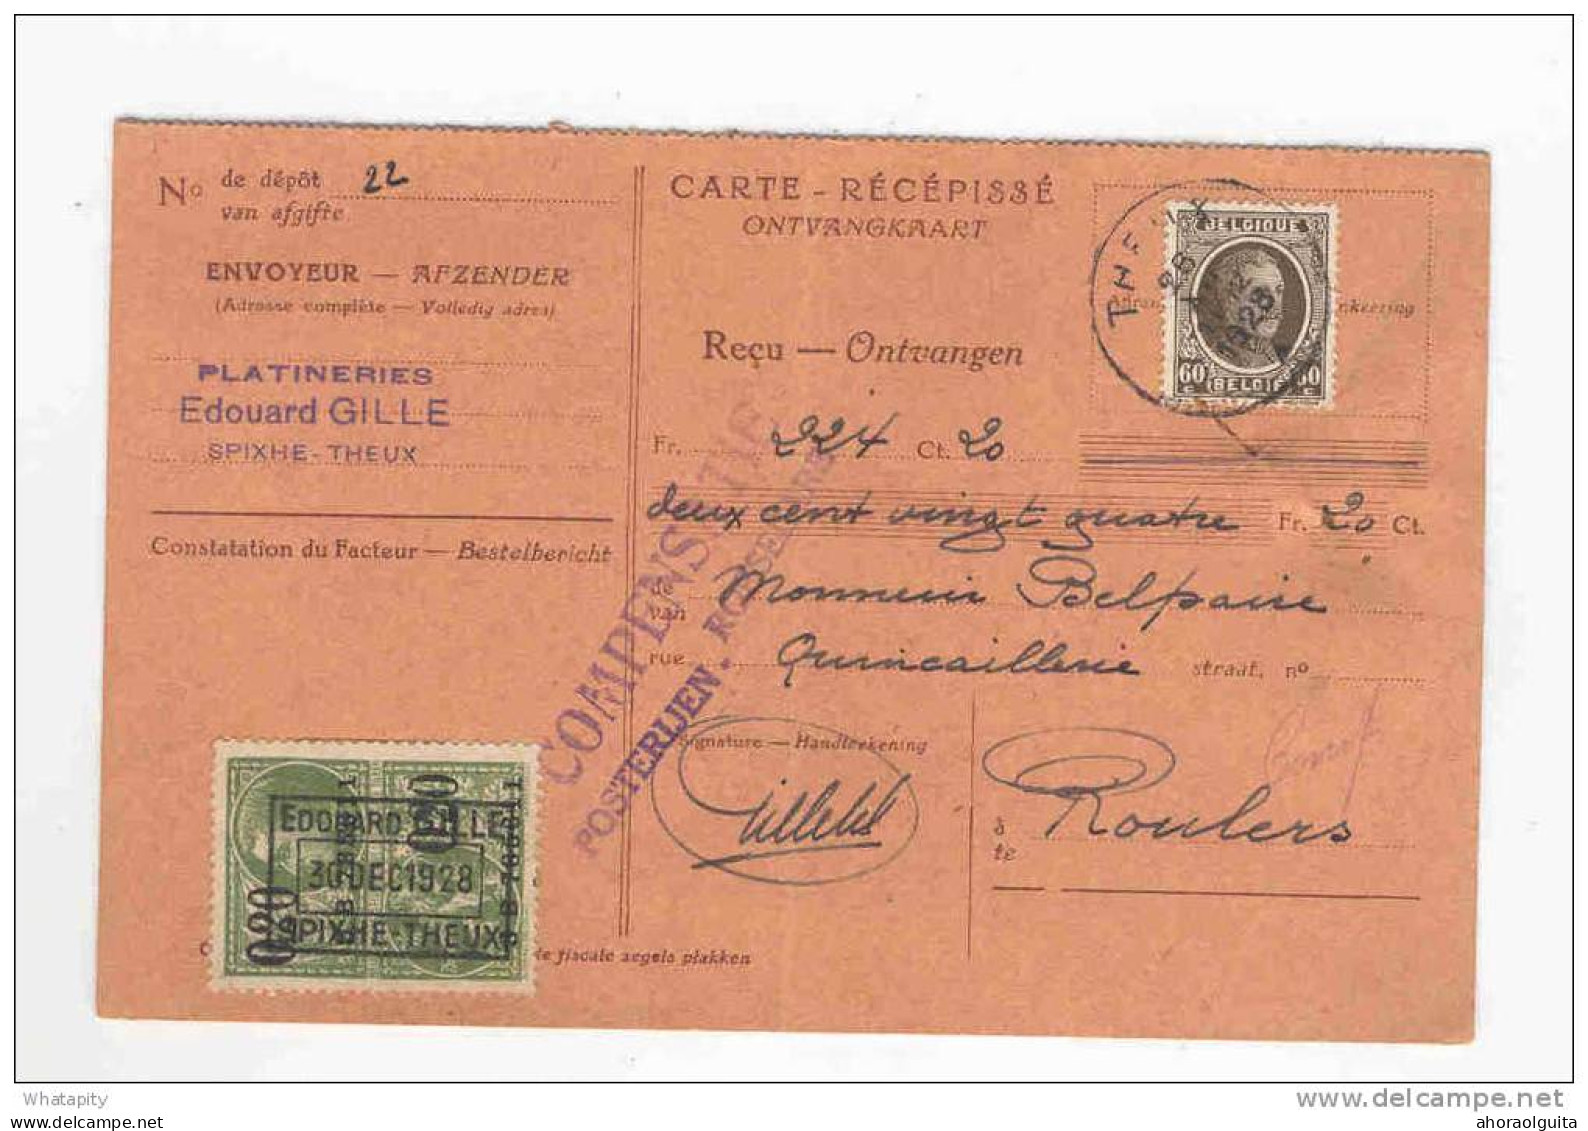 2 Cartes Récépissés 1928/1936 Vers ROULERS - Deux Griffes Différentes Compensatie Posterijen ROESELARE   --  KK818 - Folletos De La Oficina De Correos